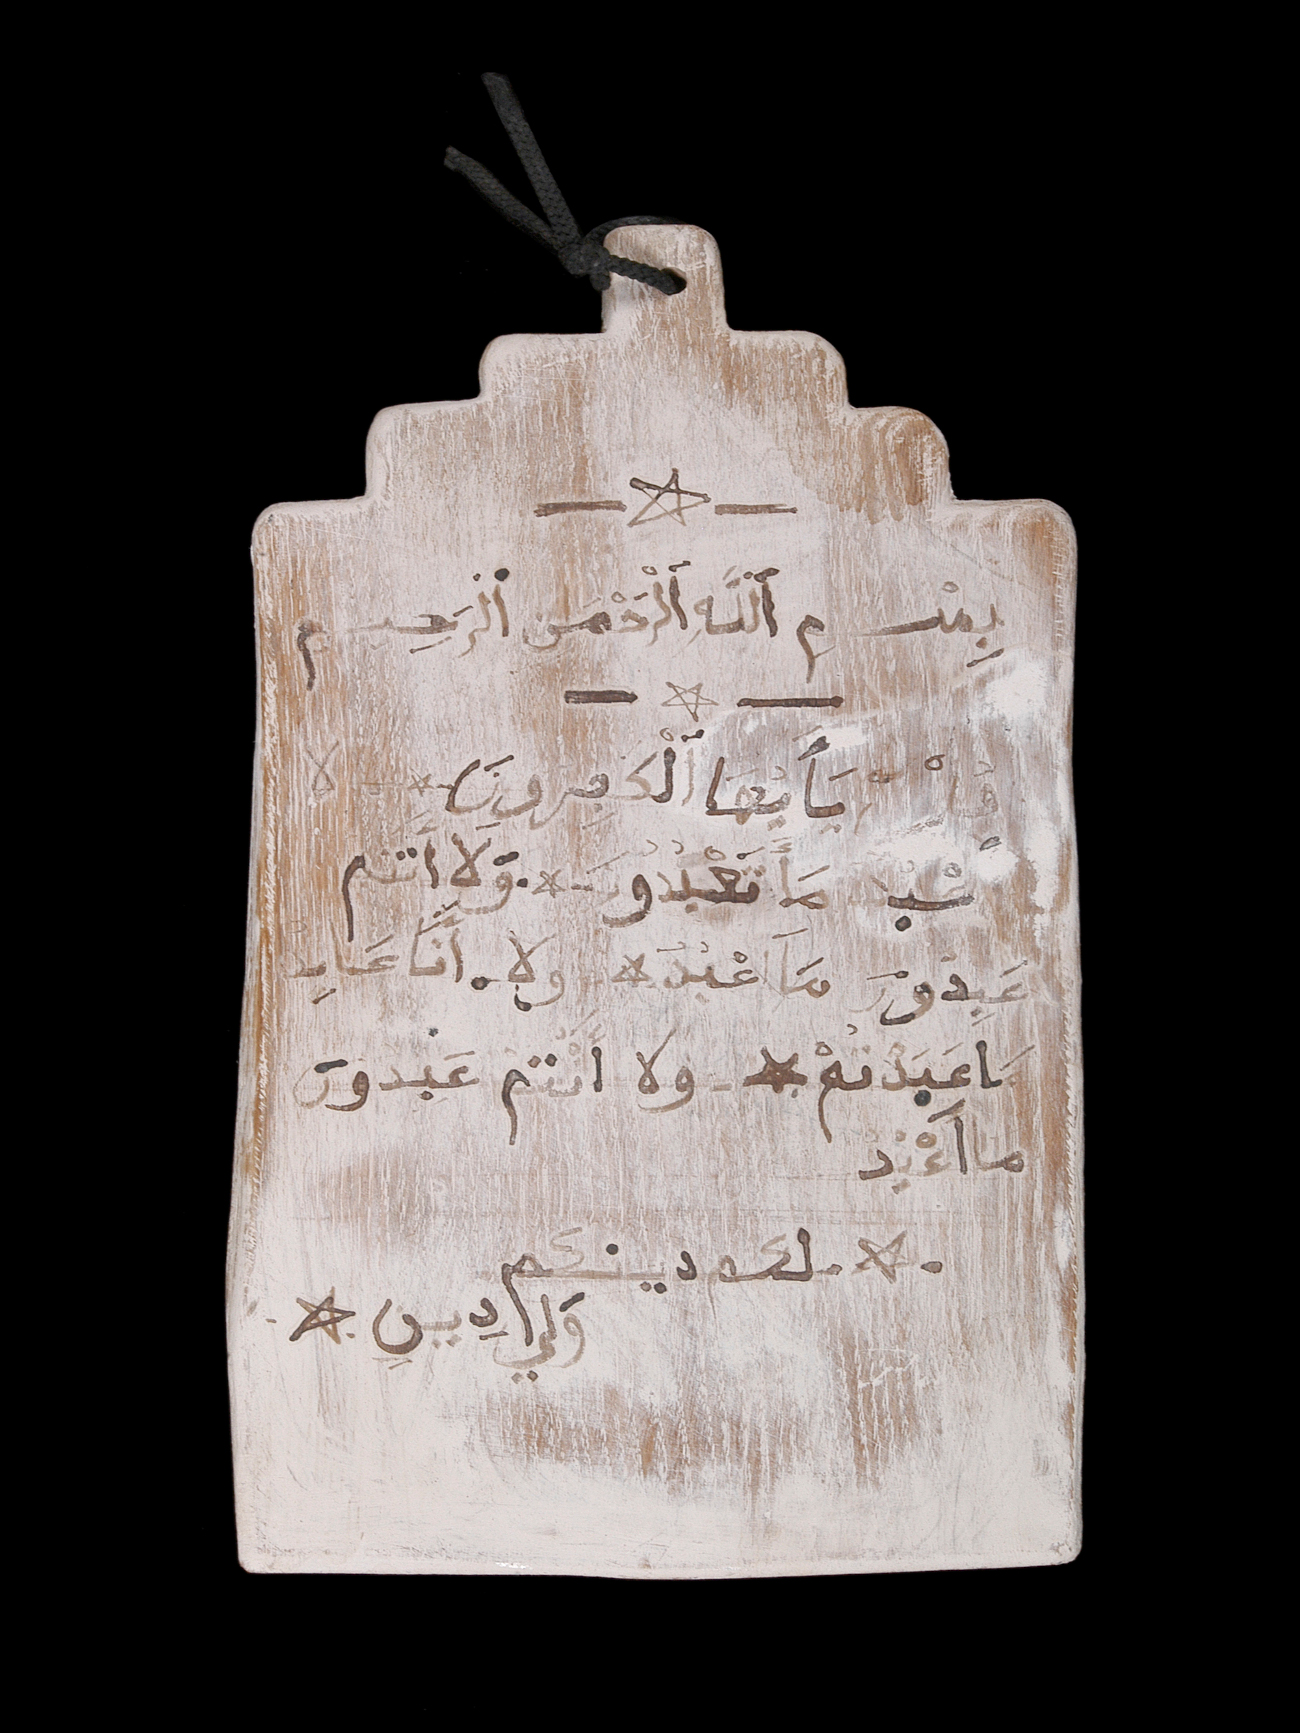 Tablette coranique, 1ère moitié du 20e siècle, Algérie, encre et argile sur bois, 2003.15.19 / © Mucem